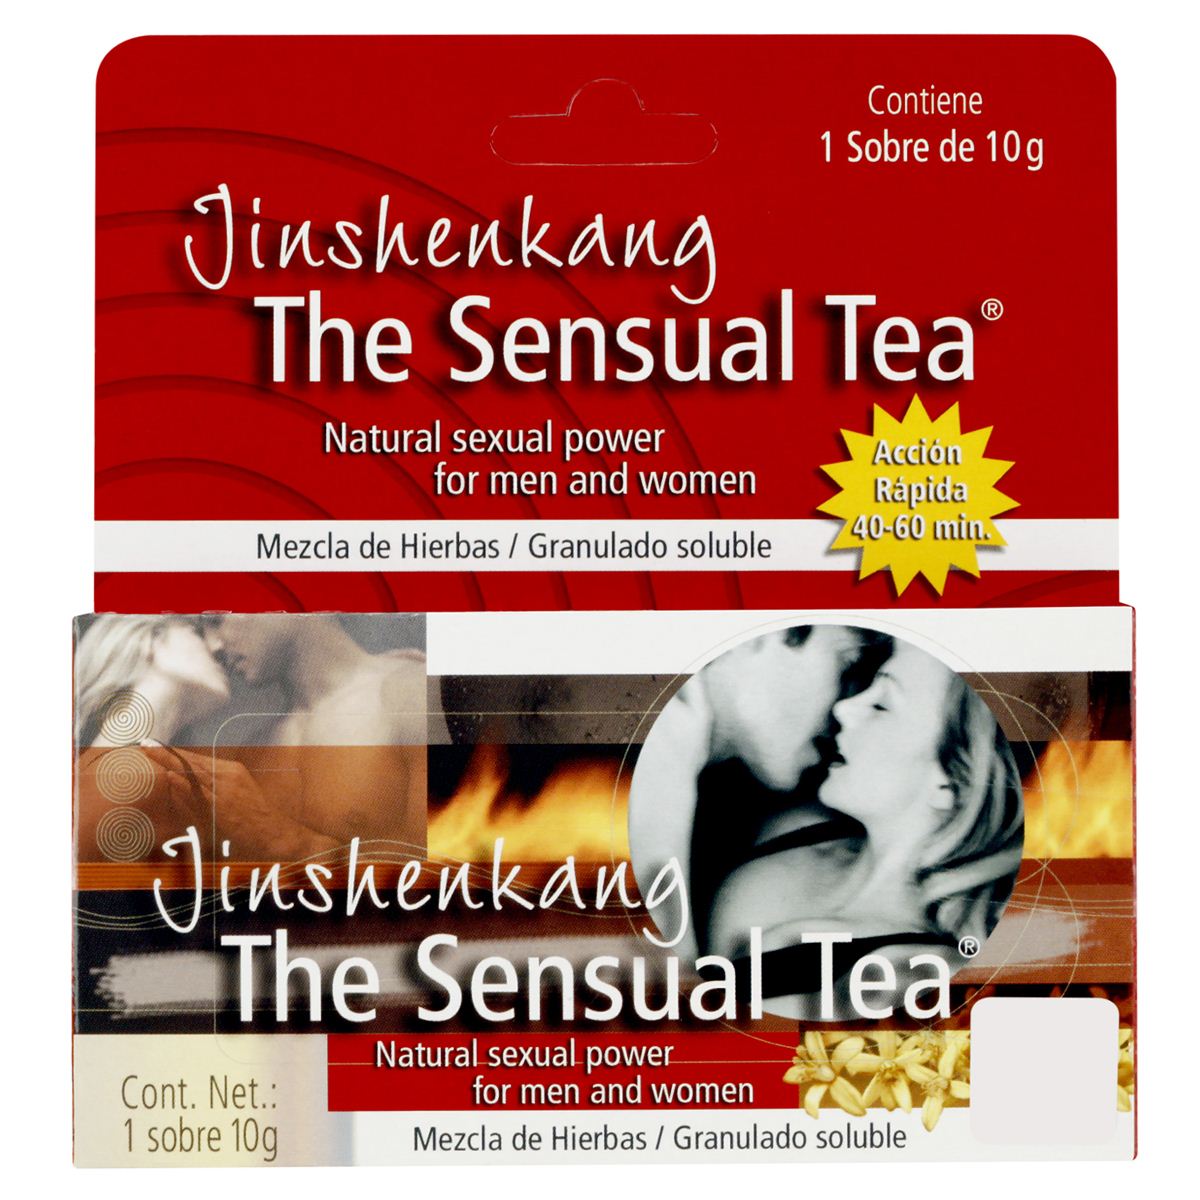 The sensual tea: ¿Qué es y para qué sirve?